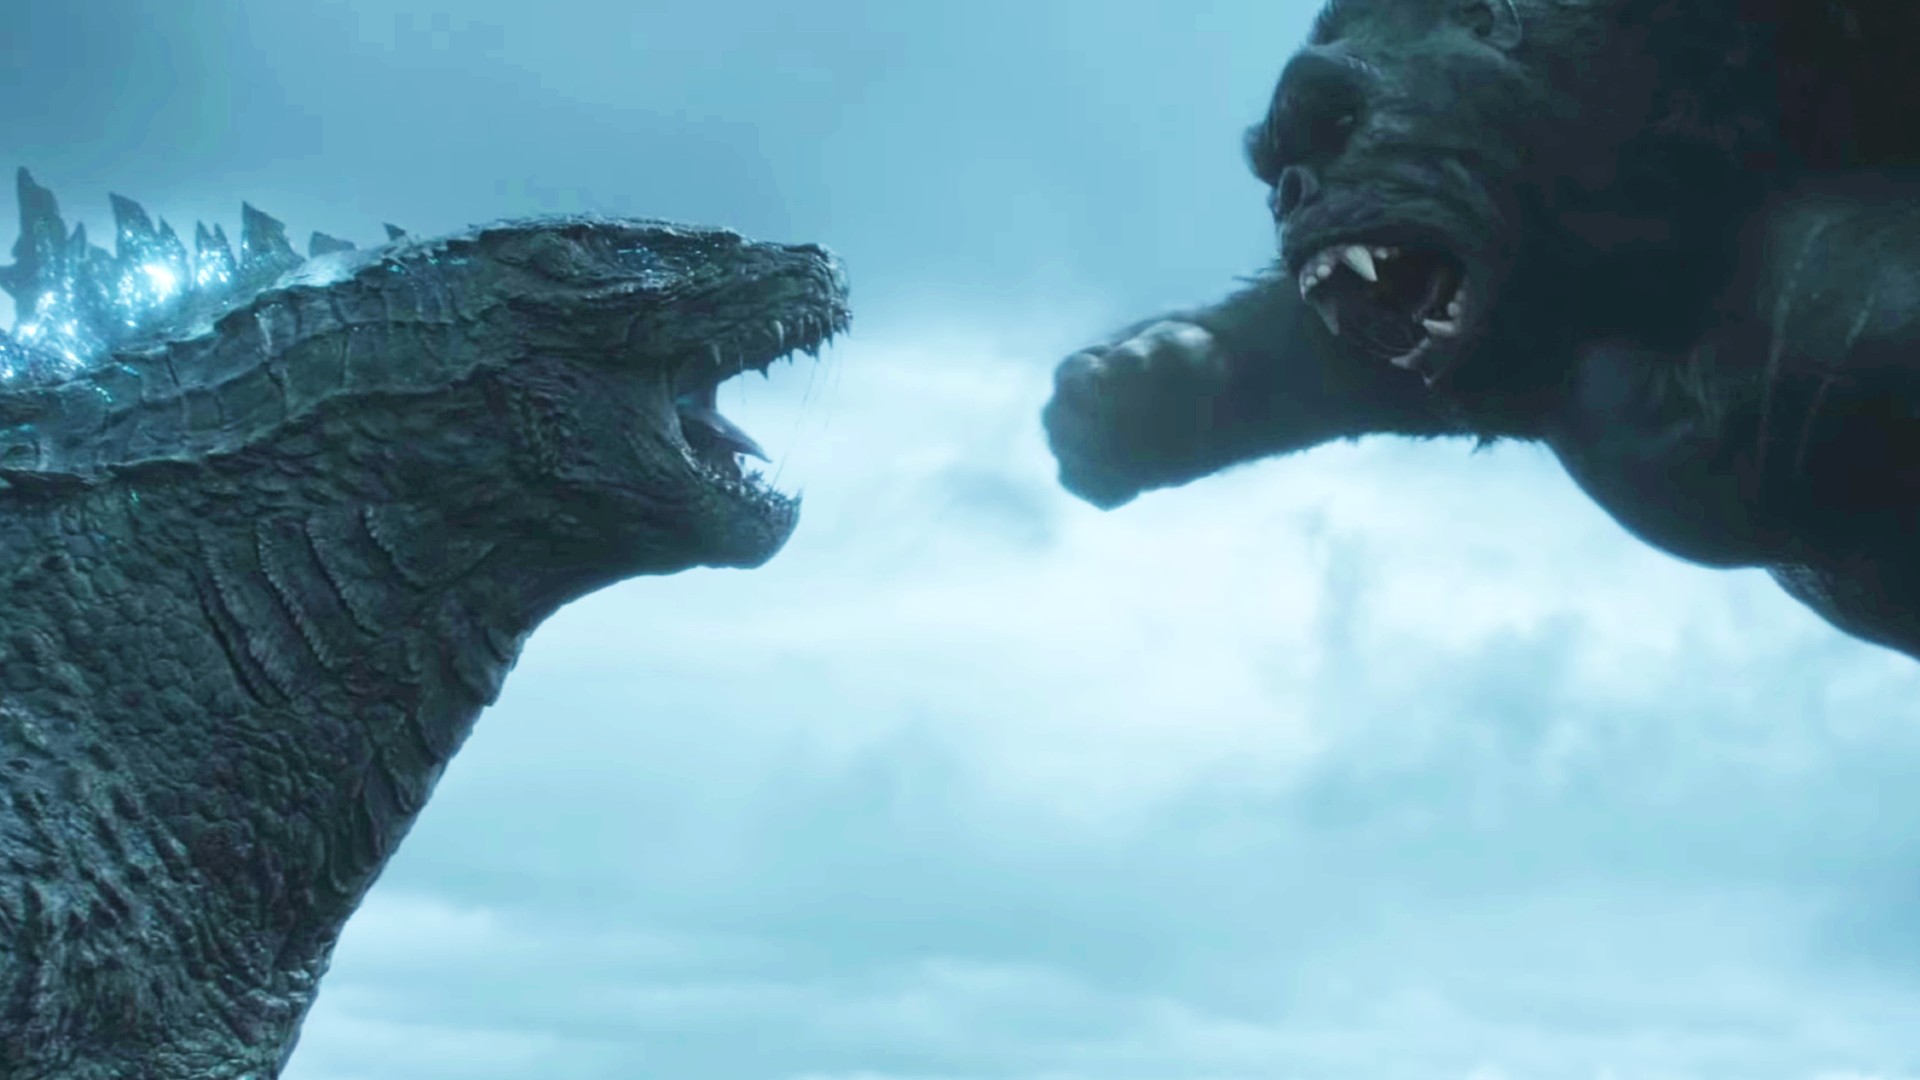 Godzilla vs kong quien gana